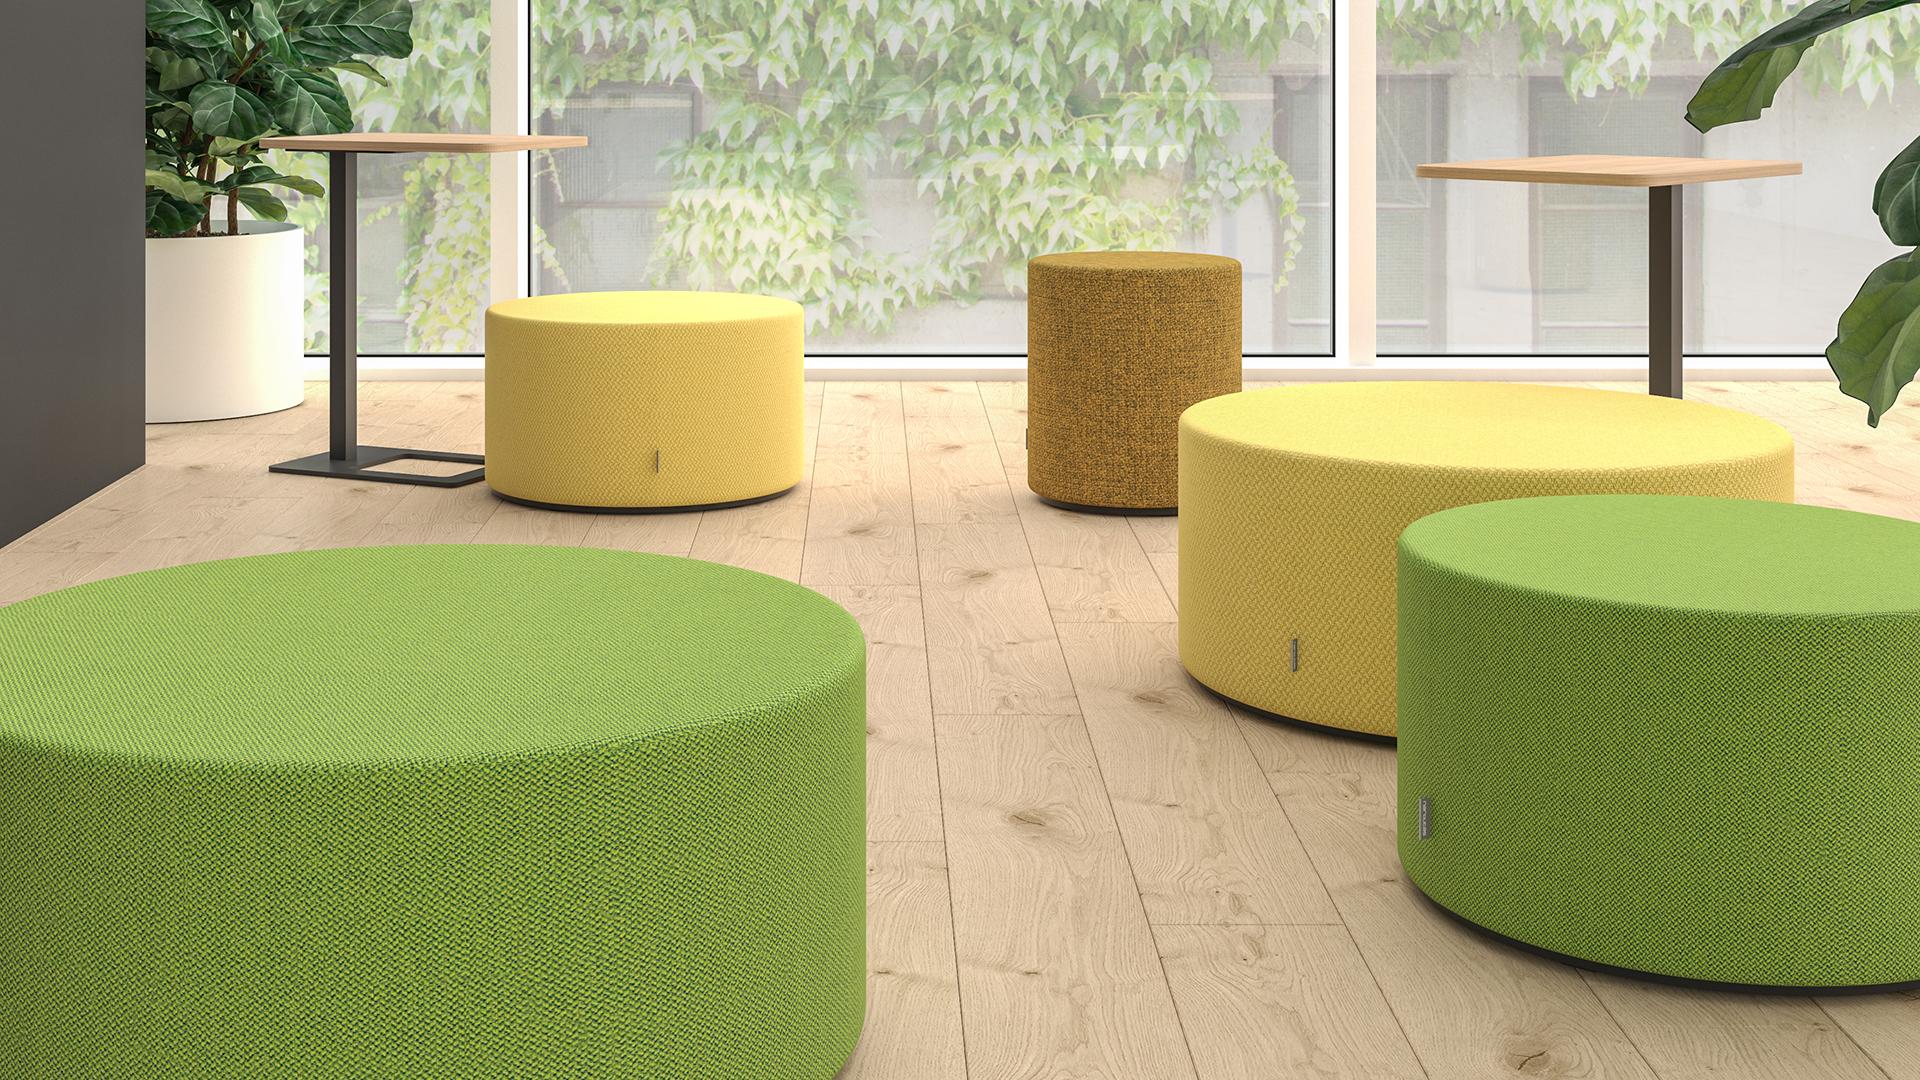 Sitzhocker in gelb und hellgrün ideal für kollaborative Arbeitsflächen